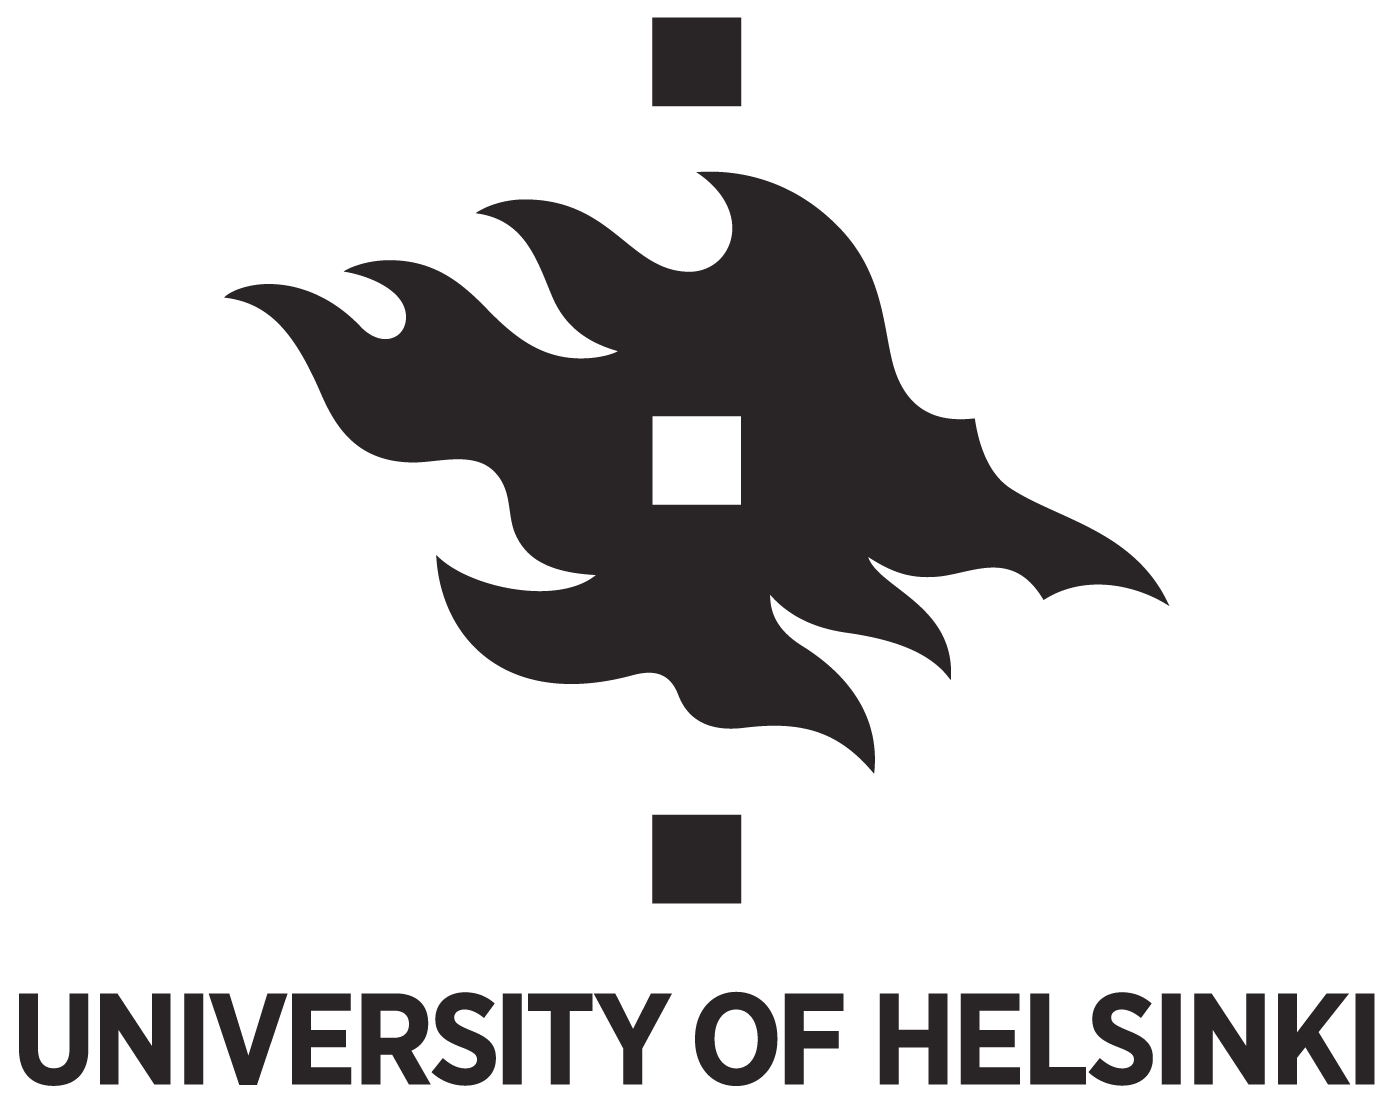 University of Helsinki